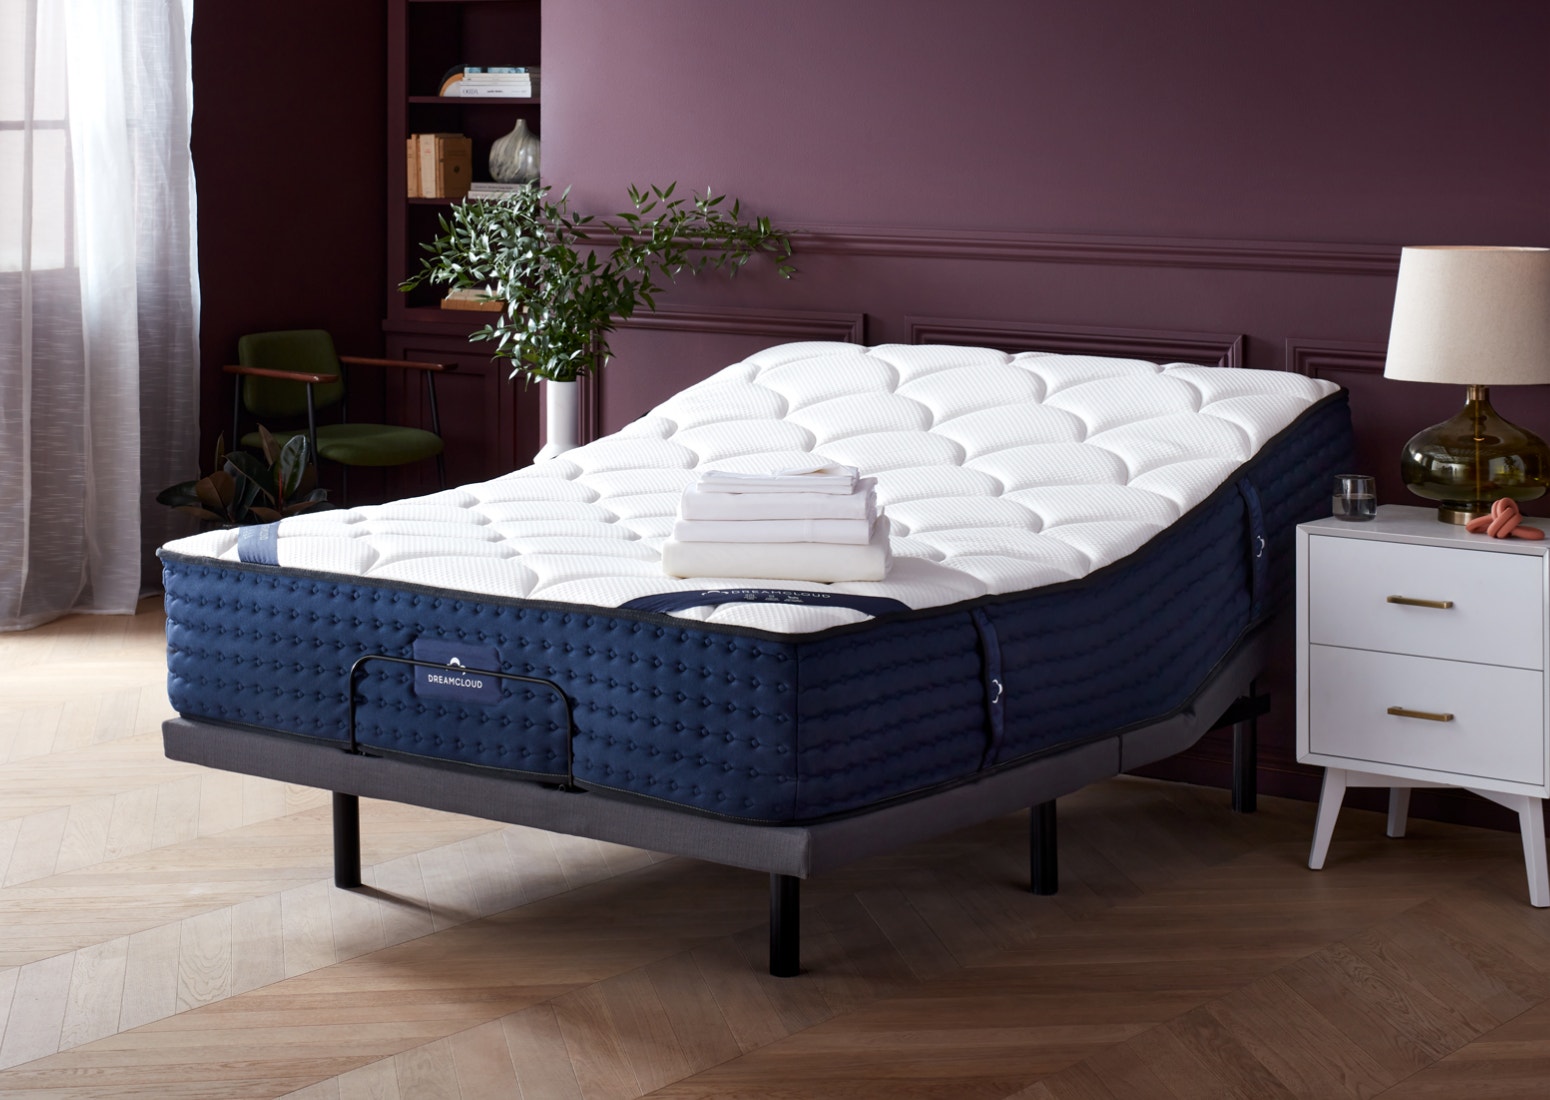 Split King Size Adjustable Bed Frames, Adjustable Bed Frame King Split